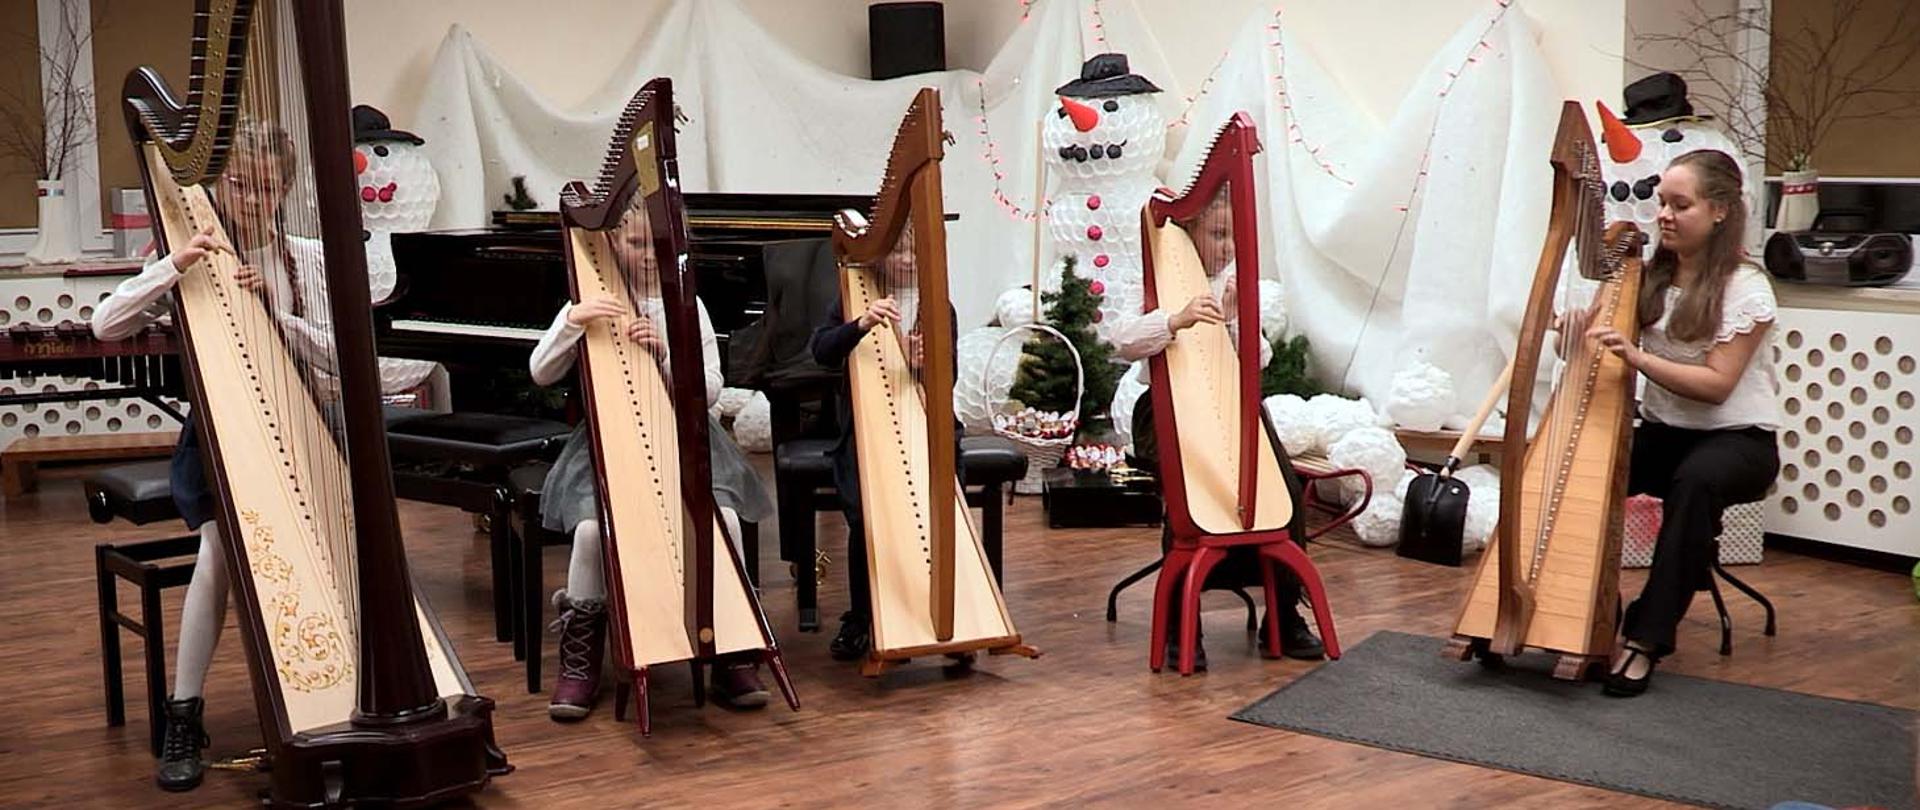 Na zdjęciu cztery dziewczynki i jedna dorosła kobieta grają na harfach. Znajdują się w pomieszczeniu, za nimi stoi czarny fortepian a za nim, przy ścianie białe dekoracje świąteczne przypominające bałwany.